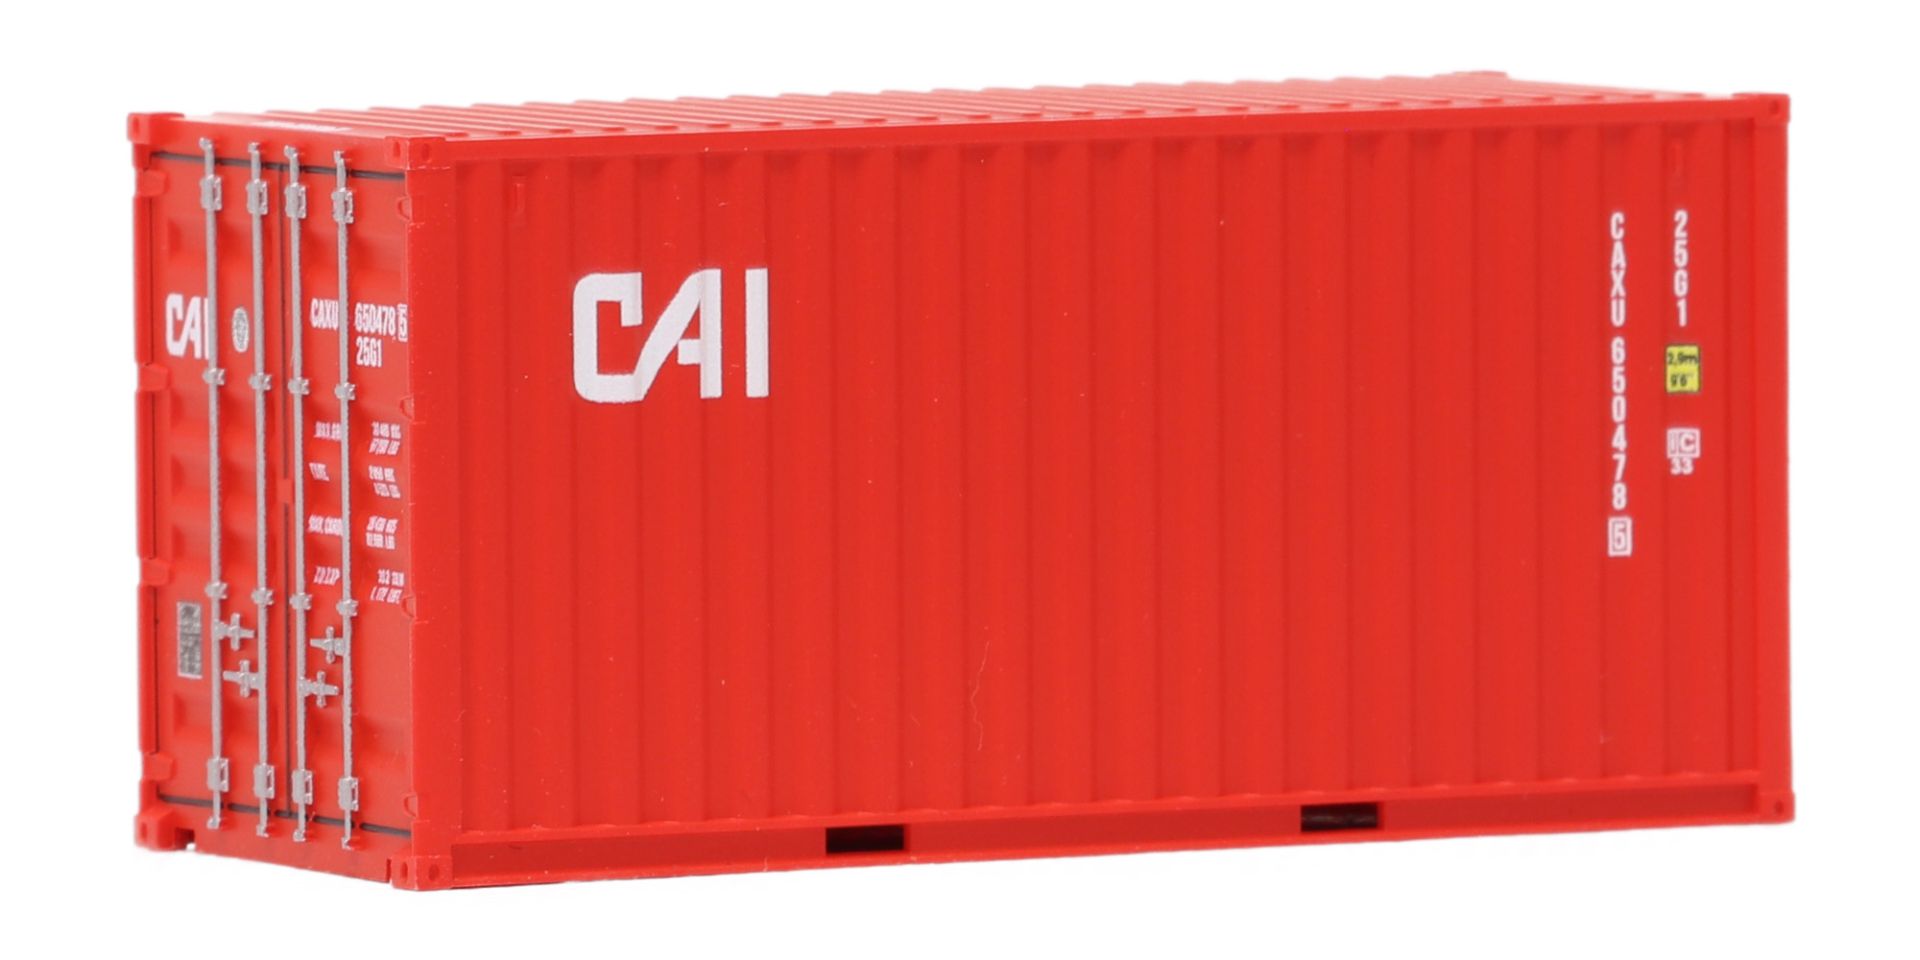 igra 96050005-1 - Container 20', CAI